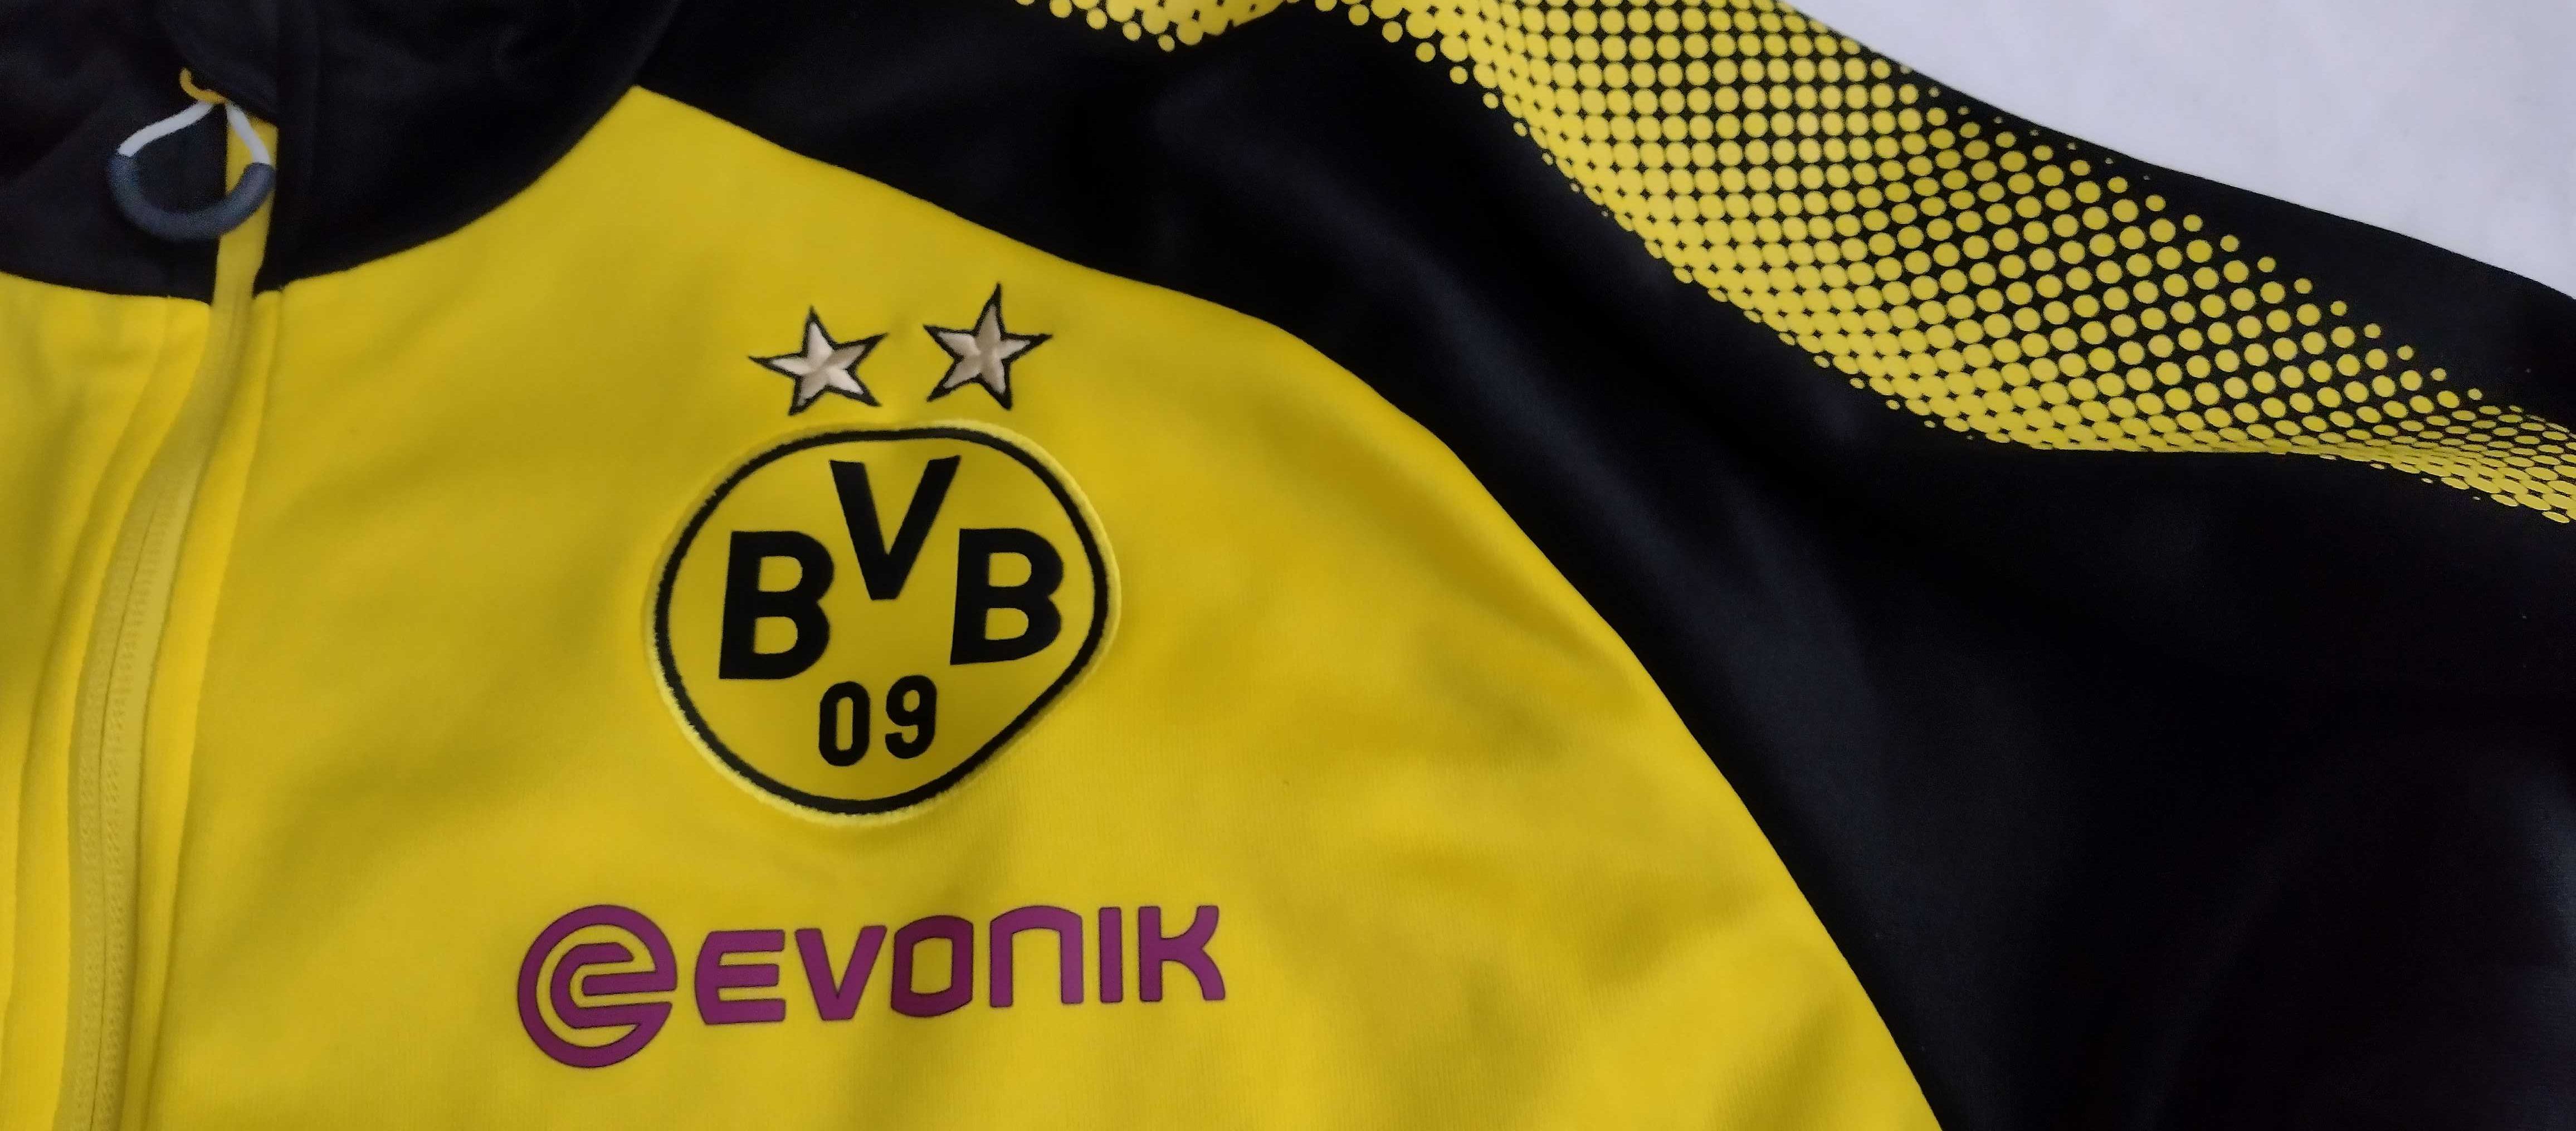 kszulka piłkarska BVB Borussia Dortmund Evonik bluza rozm. 56/58